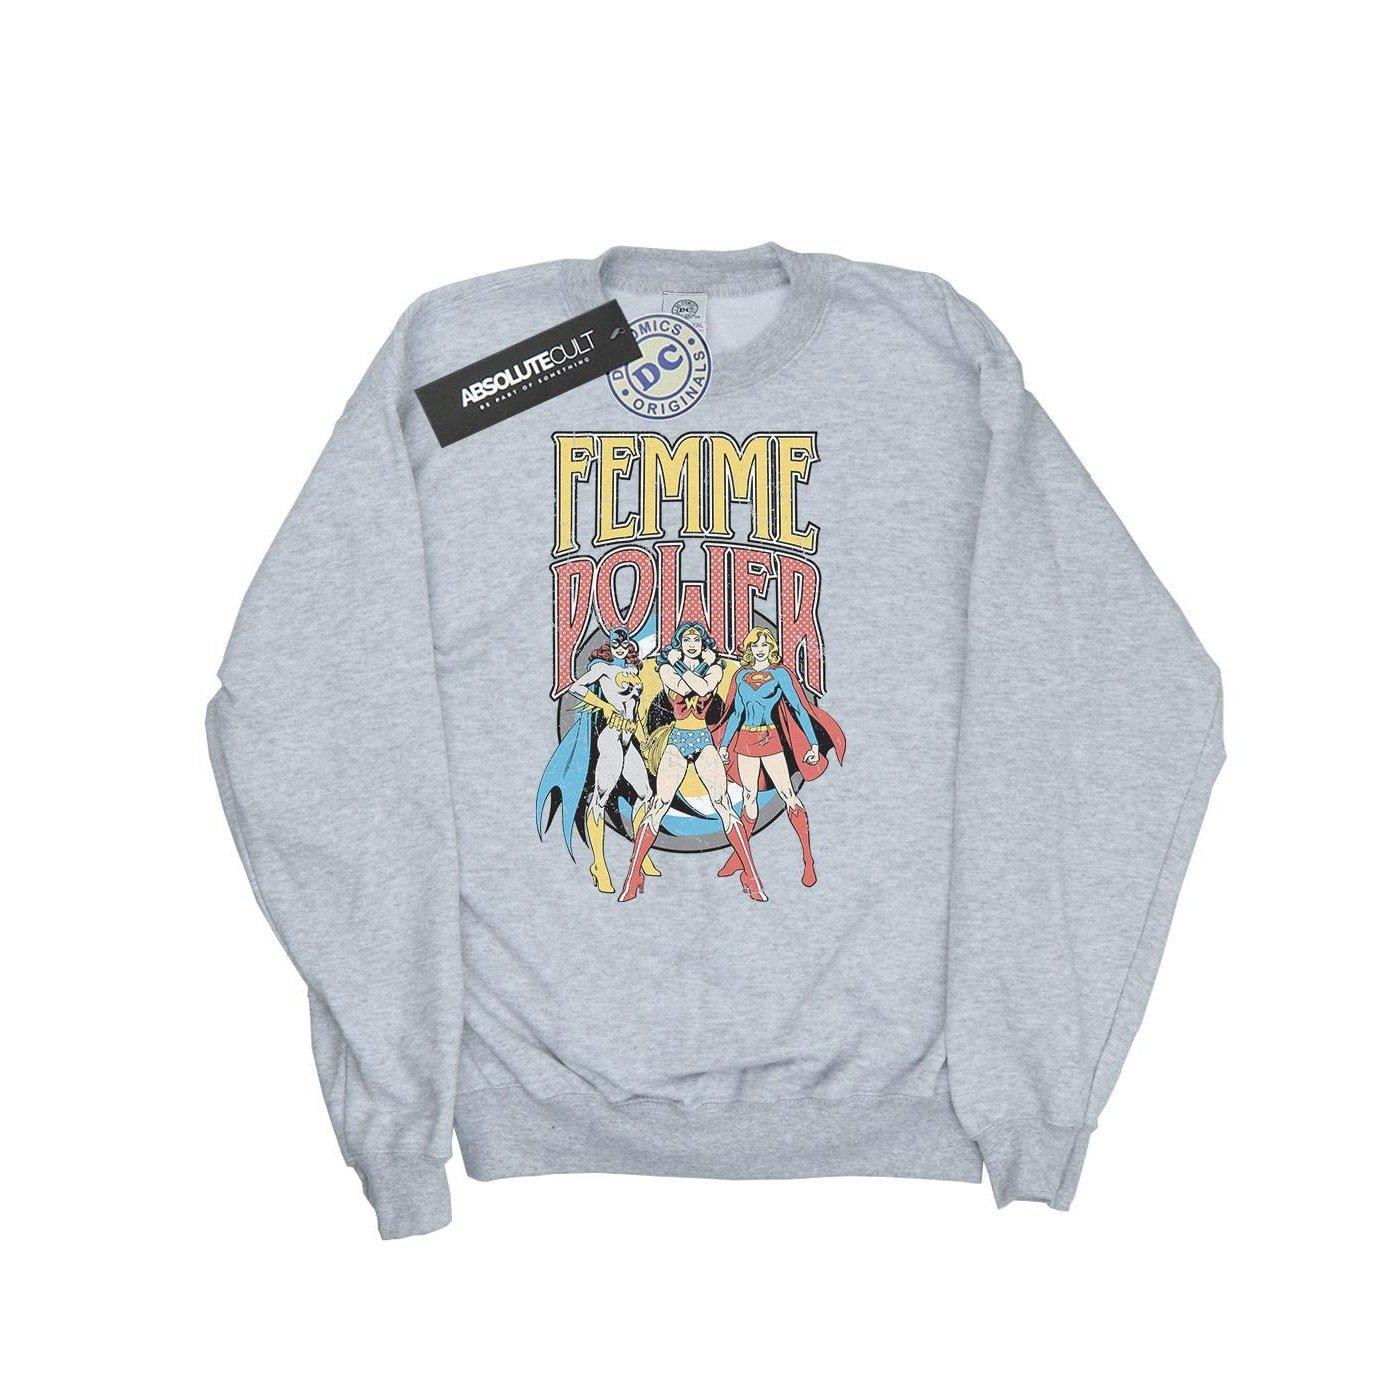 Femme Power Sweatshirt Damen Grau XL von DC COMICS